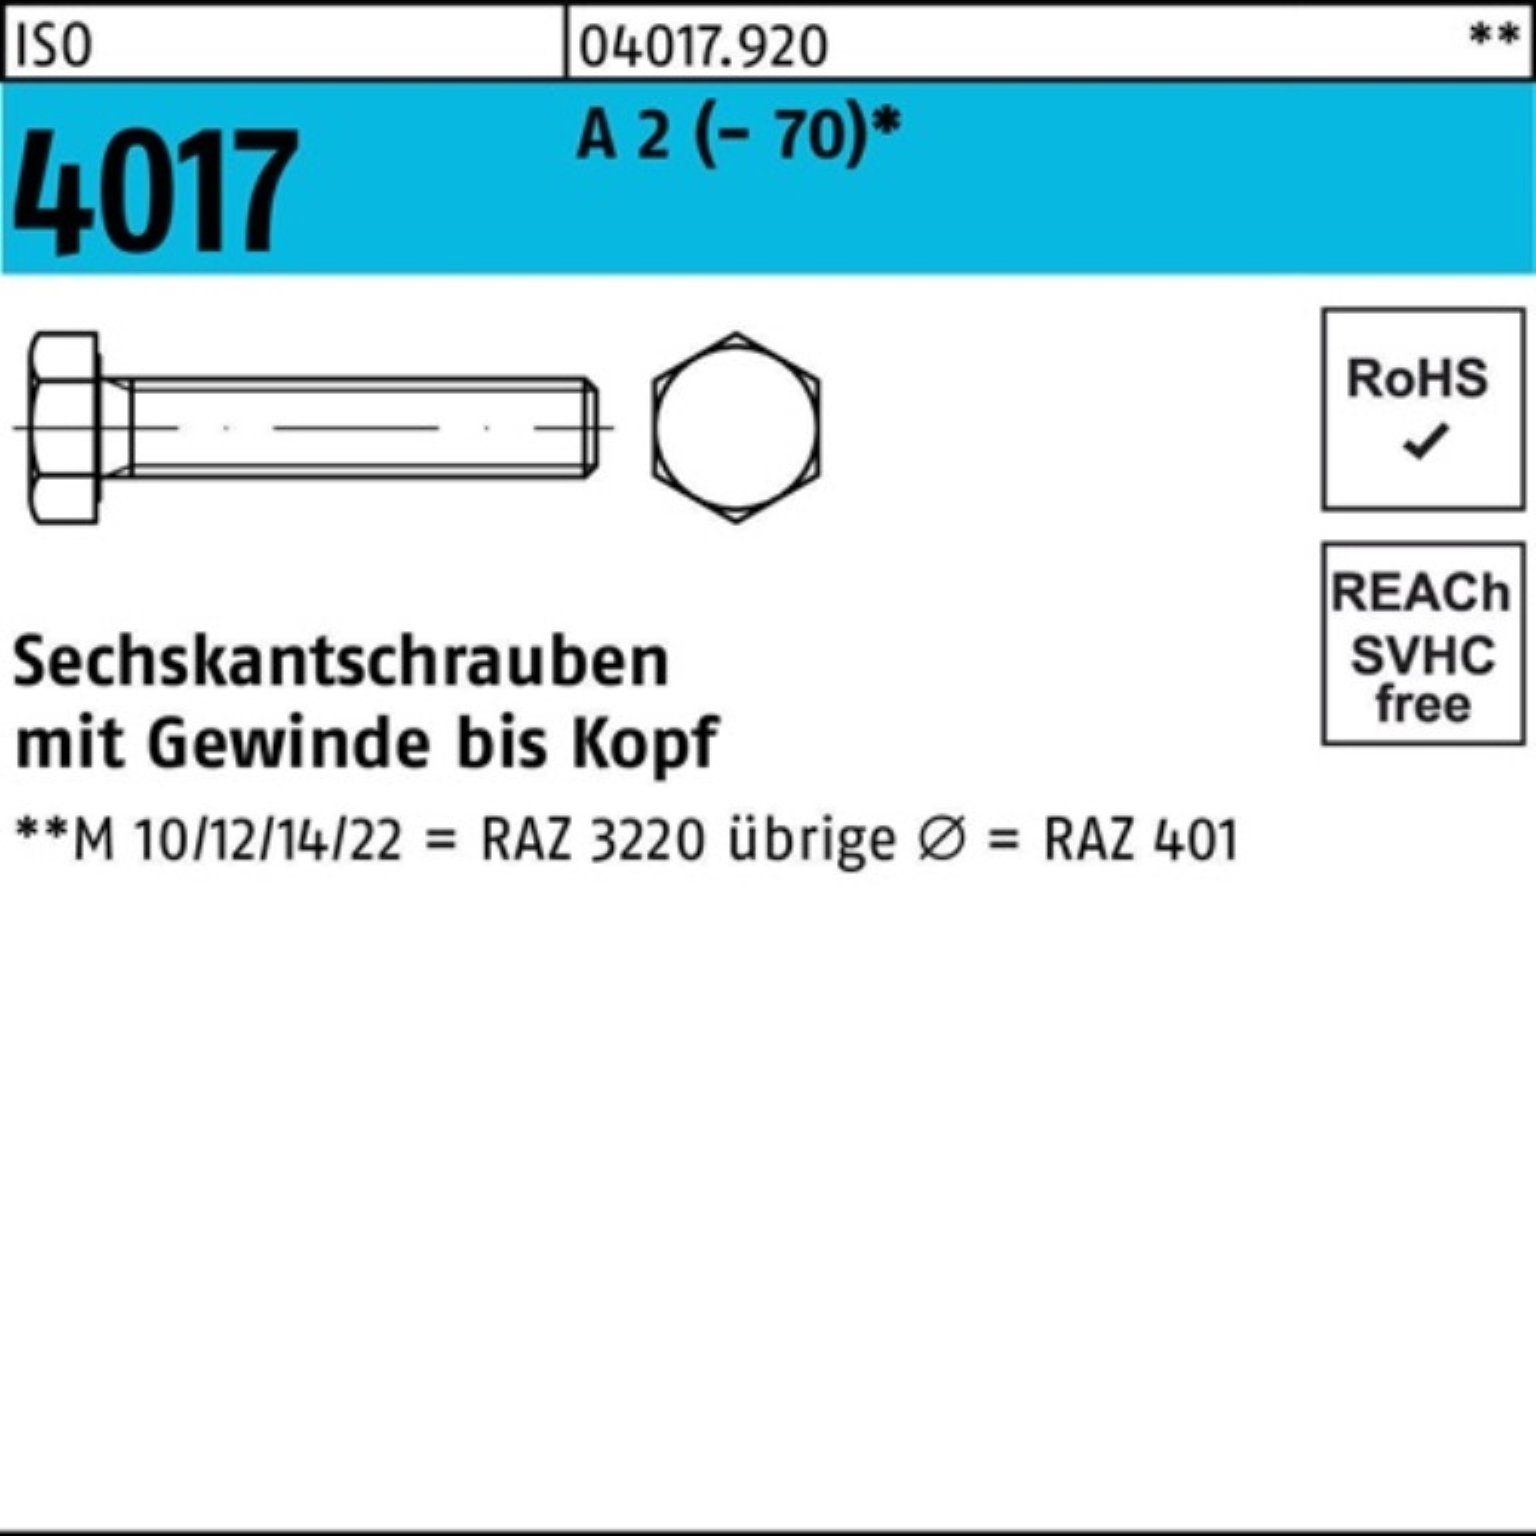 Bufab Sechskantschraube 100er Pack Sechskantschraube ISO 4017 VG M14x 45 A 2 (70) 50 Stück